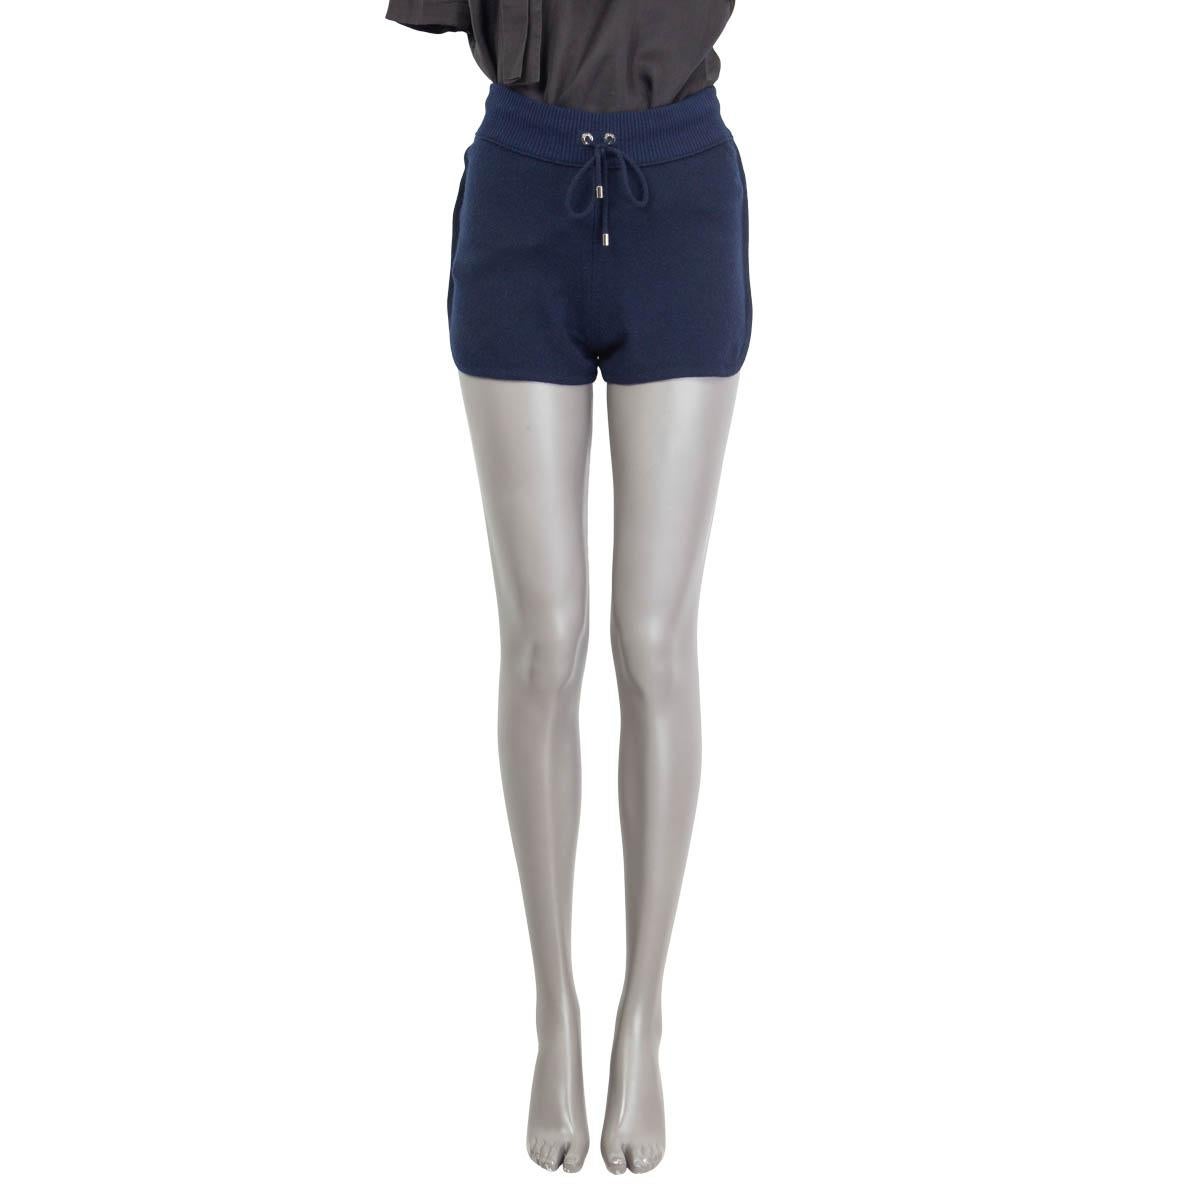 100% authentische Chanel Frühling 2012 gestrickte Hot Pants Shorts in marineblauem Kaschmir (100%). Kordelzug in der Taille und aufgesetzte Tasche auf der Rückseite. Brandneu.

Messungen
Tag Größe	36
Größe	XS
Taille	62 cm (24,2 Zoll) bis 80 cm (31,2